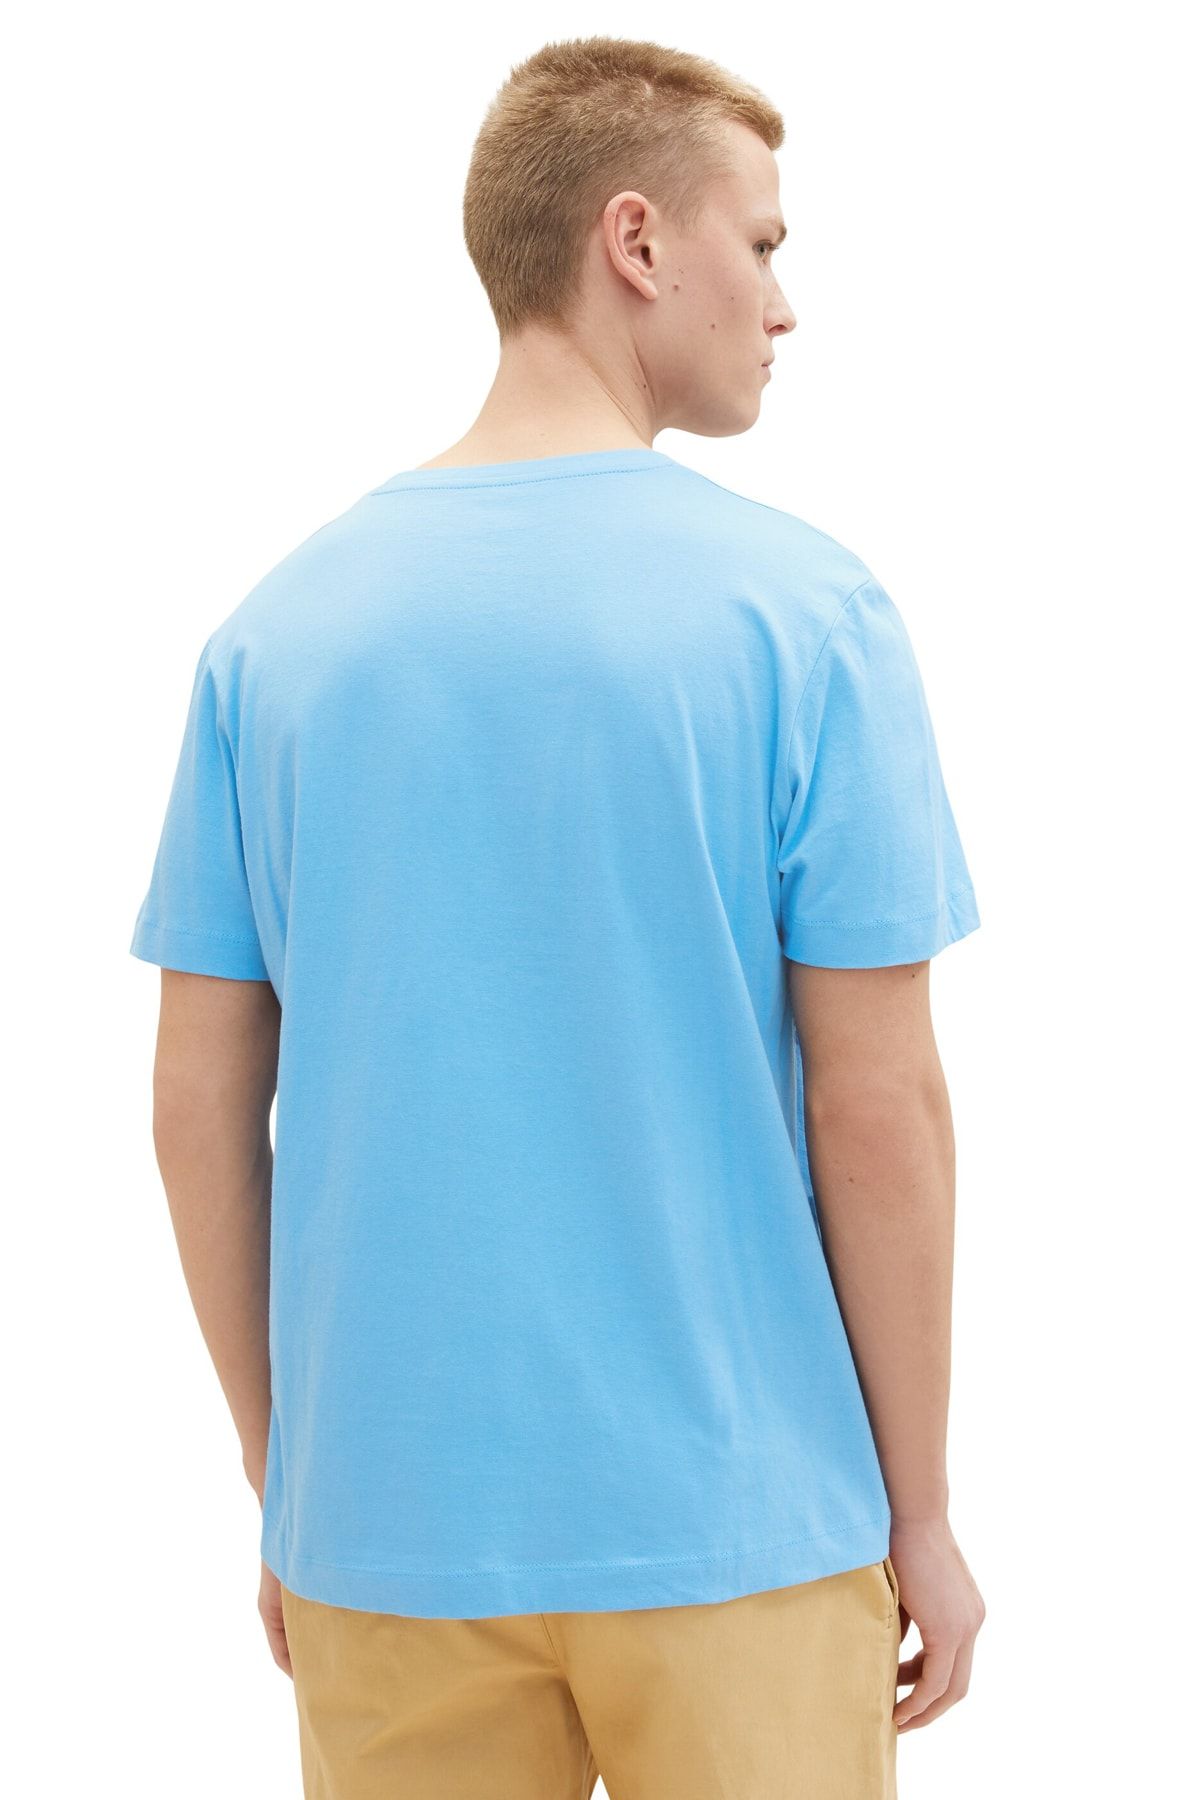 Tom Tailor Denim Men\'s rainy sky T-Shirt blue - Trendyol